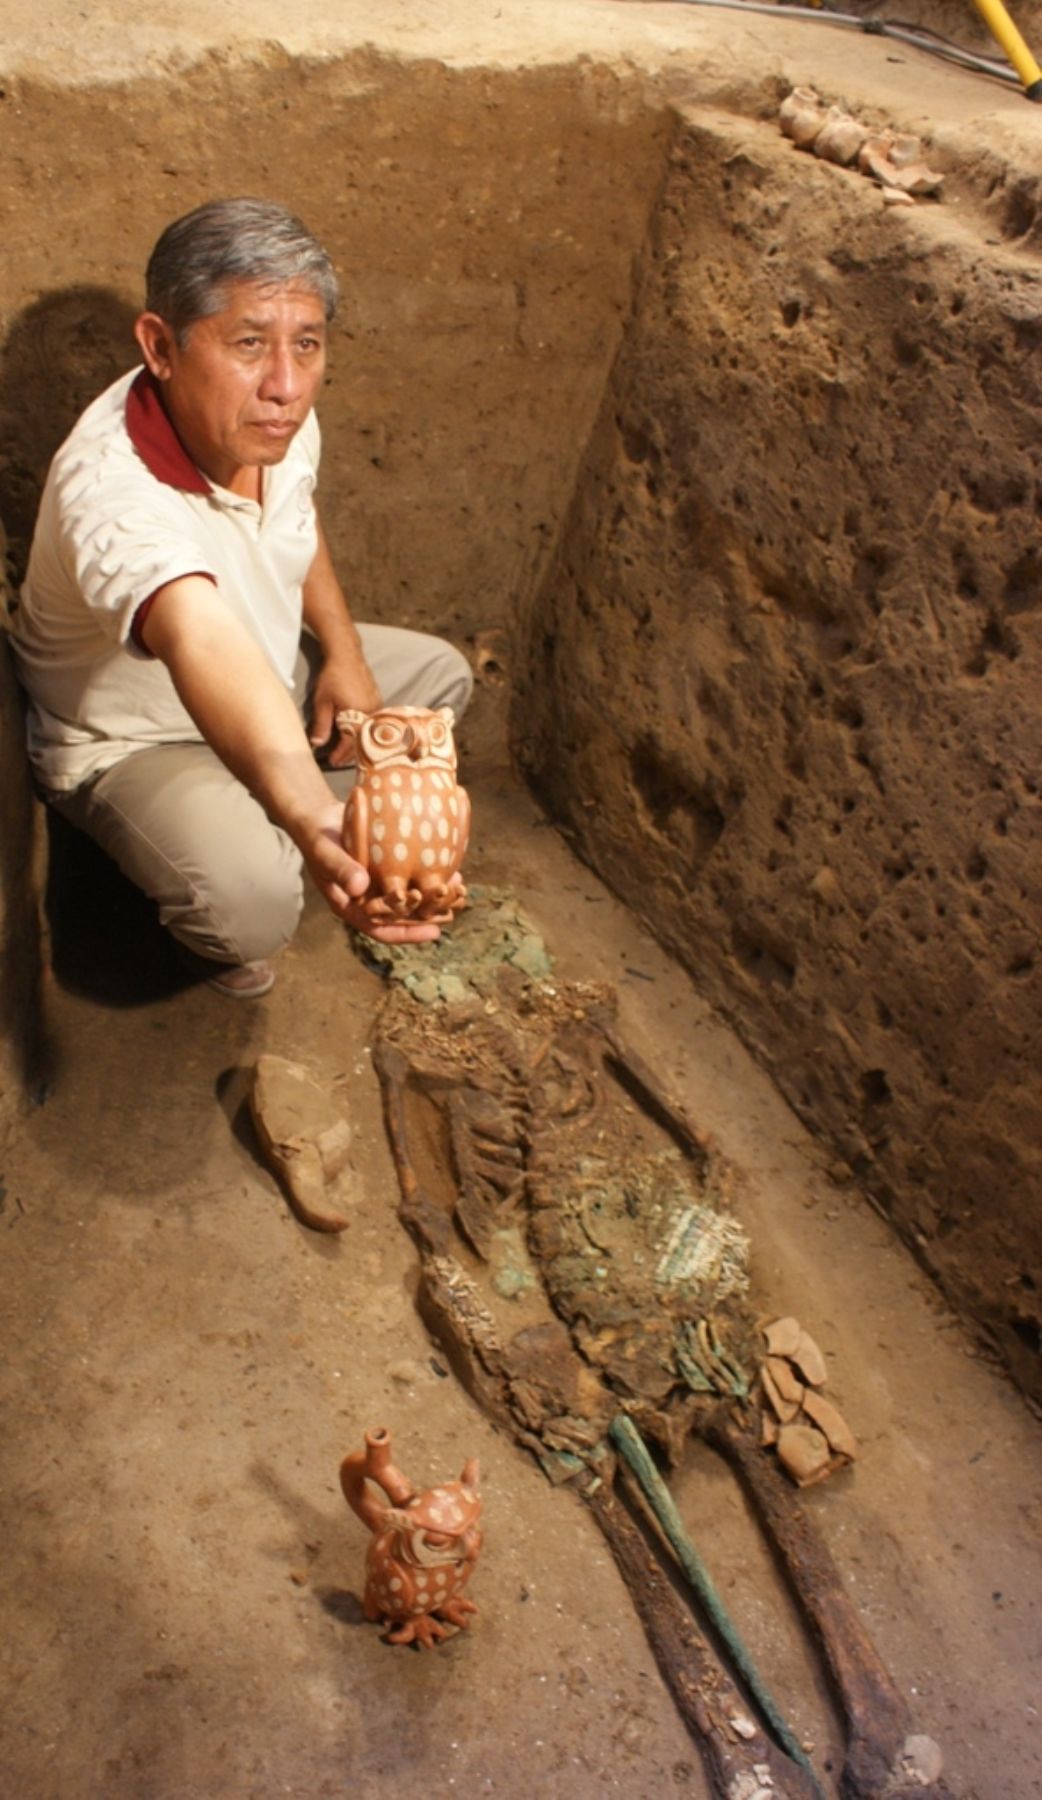 Arqueólogo Luis Chero muestra cerámica en forma de búho encontrada junto a restos de joven noble en el complejo arqueológico de Huaca Rajada-Sipán. Foto: ANDINA/Silvia Depaz.